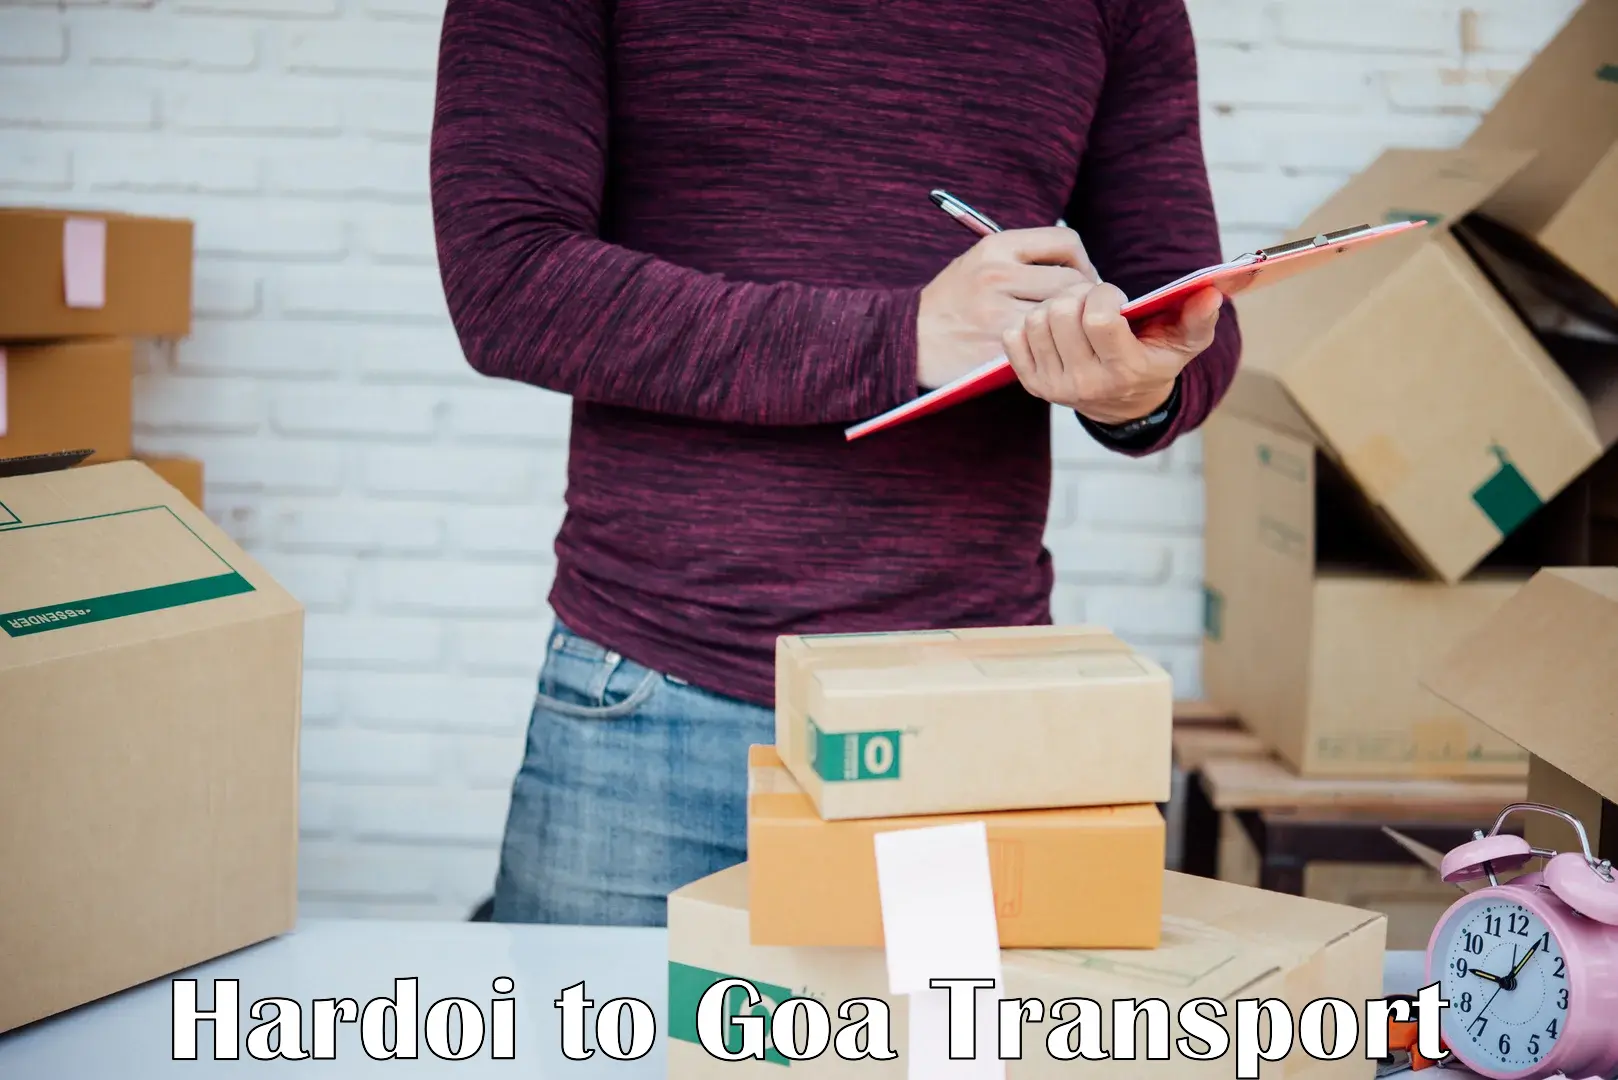 Express transport services Hardoi to South Goa